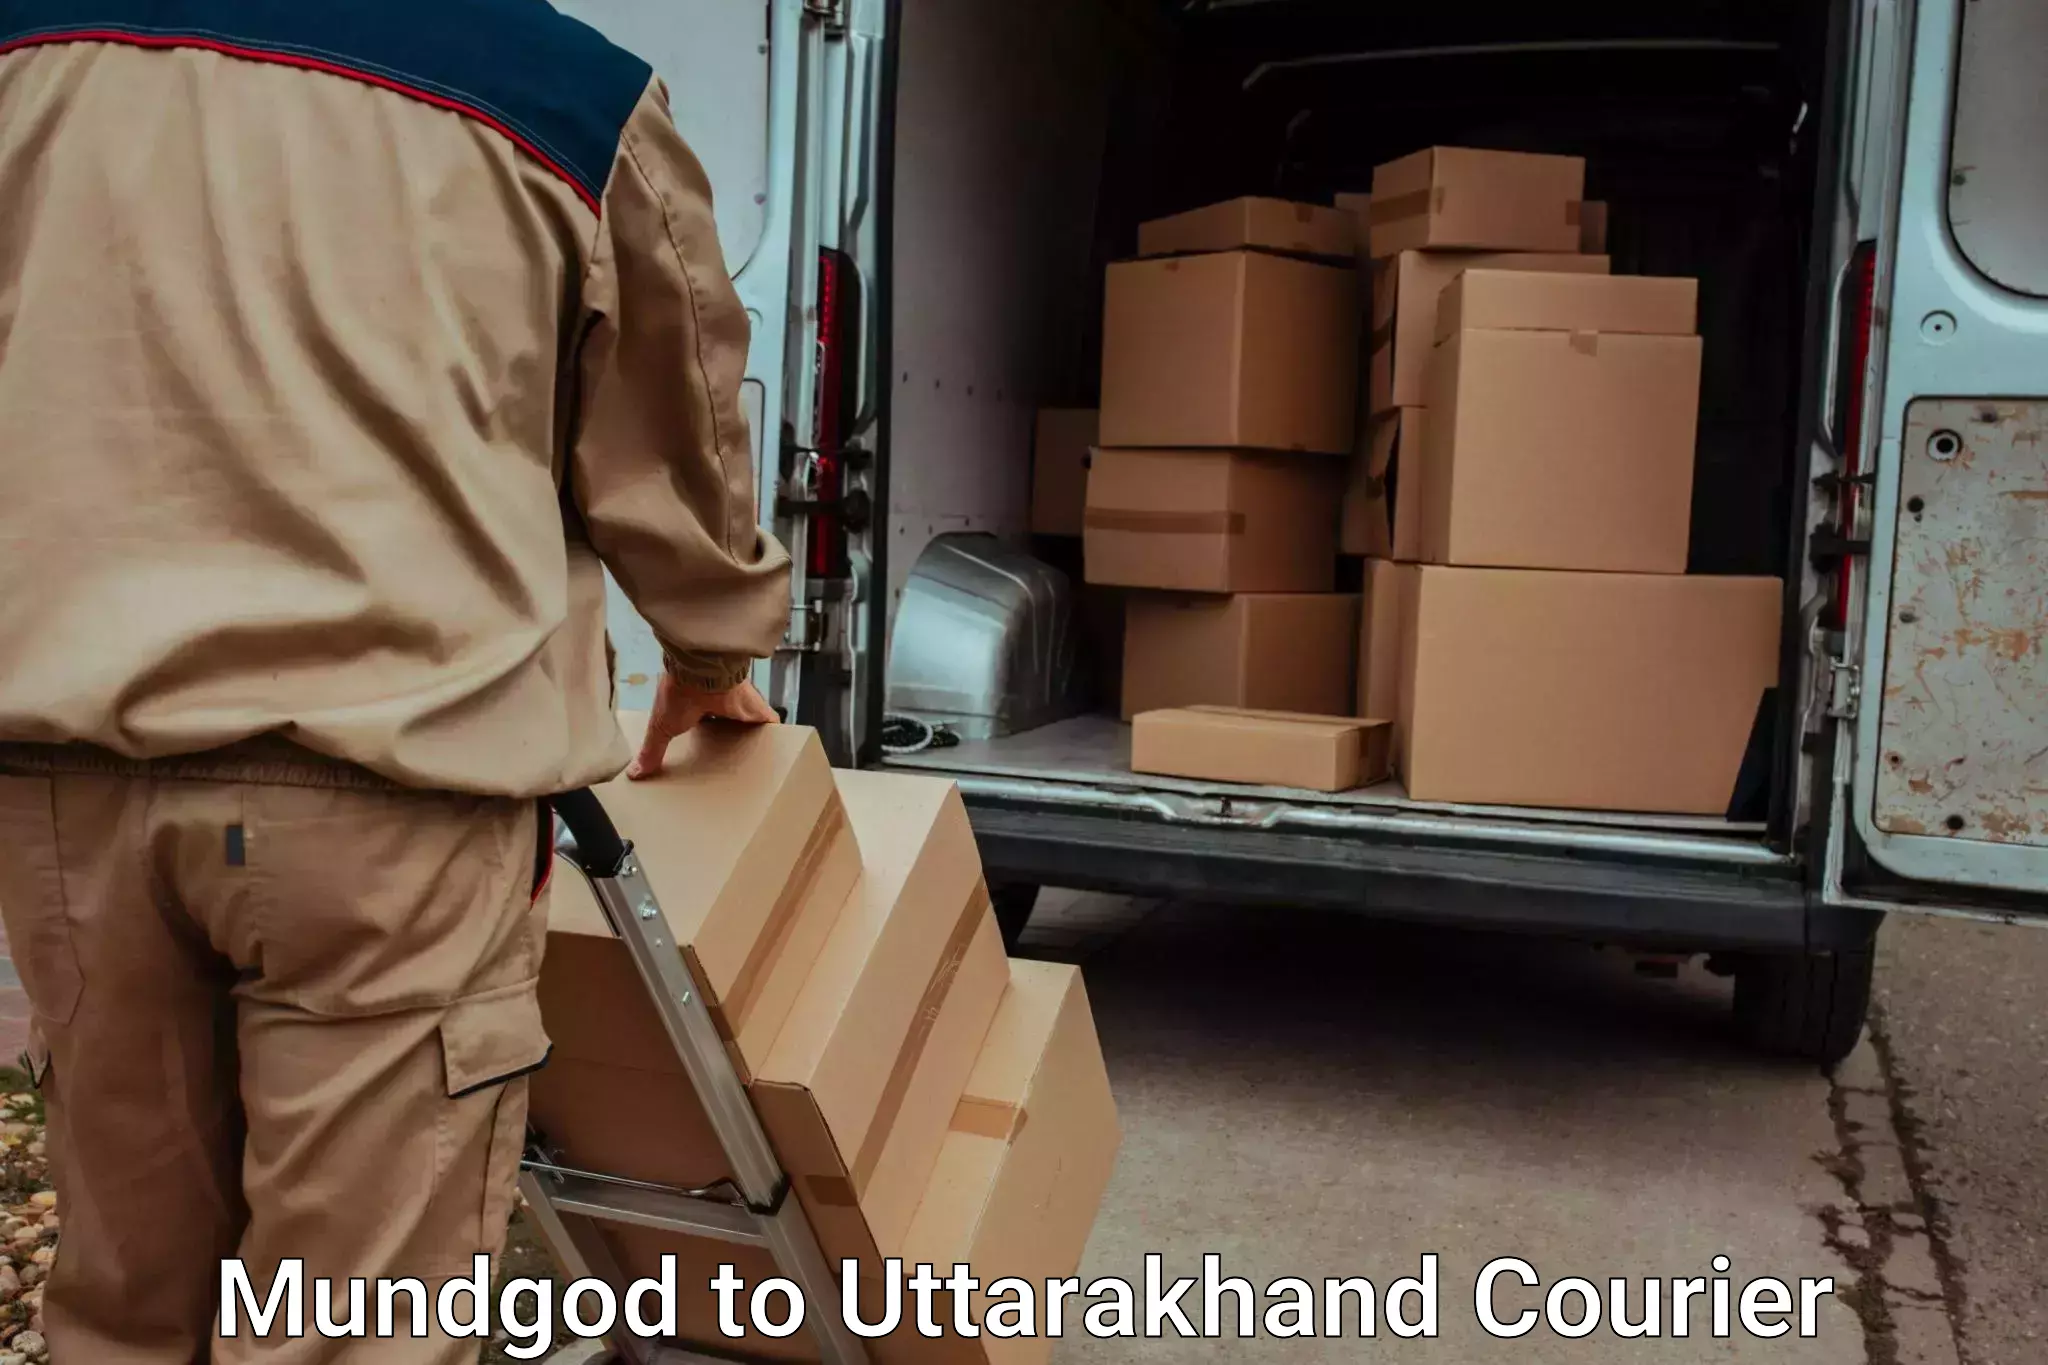 Luggage transport service Mundgod to Rudraprayag